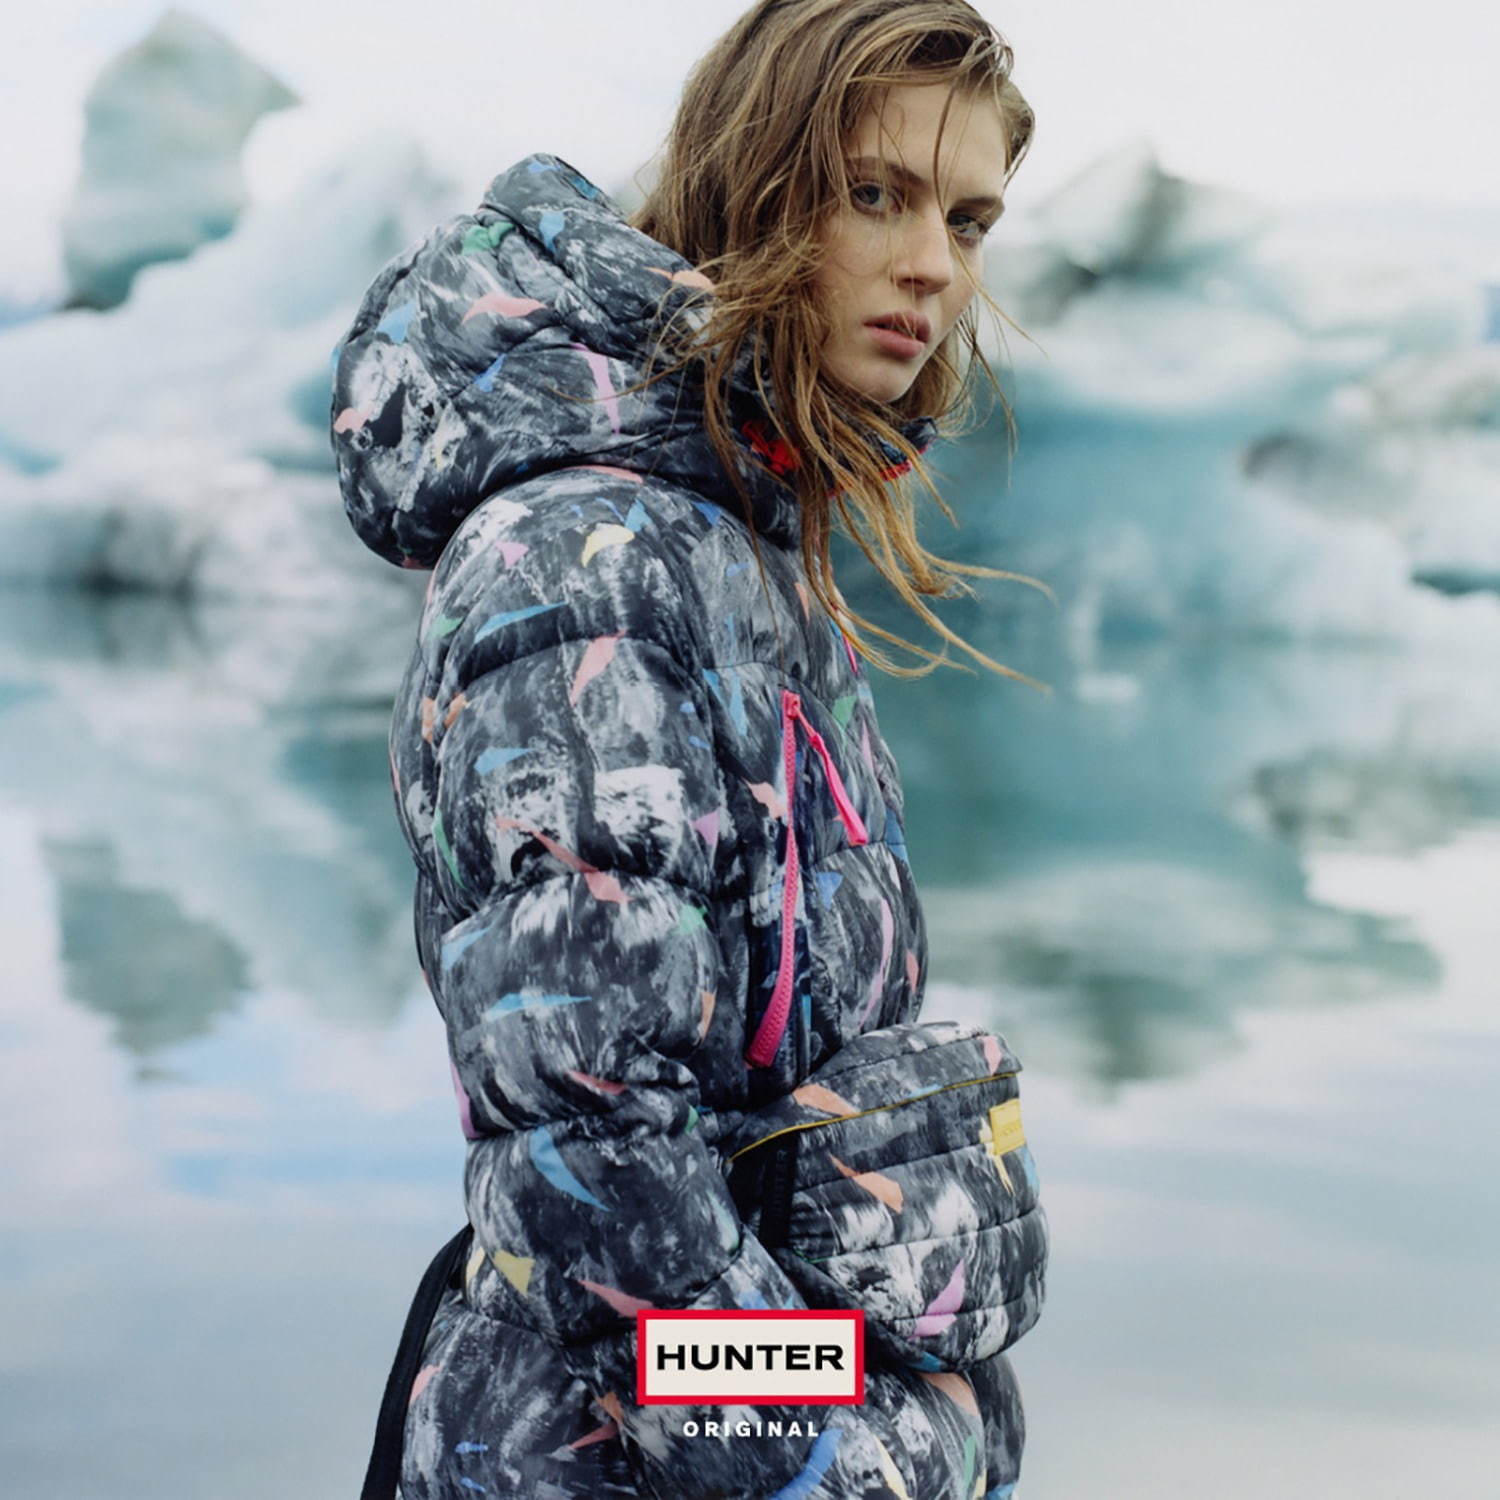 ハンター Hunter 19 年秋冬ウィメンズ メンズコレクション ファッションプレス